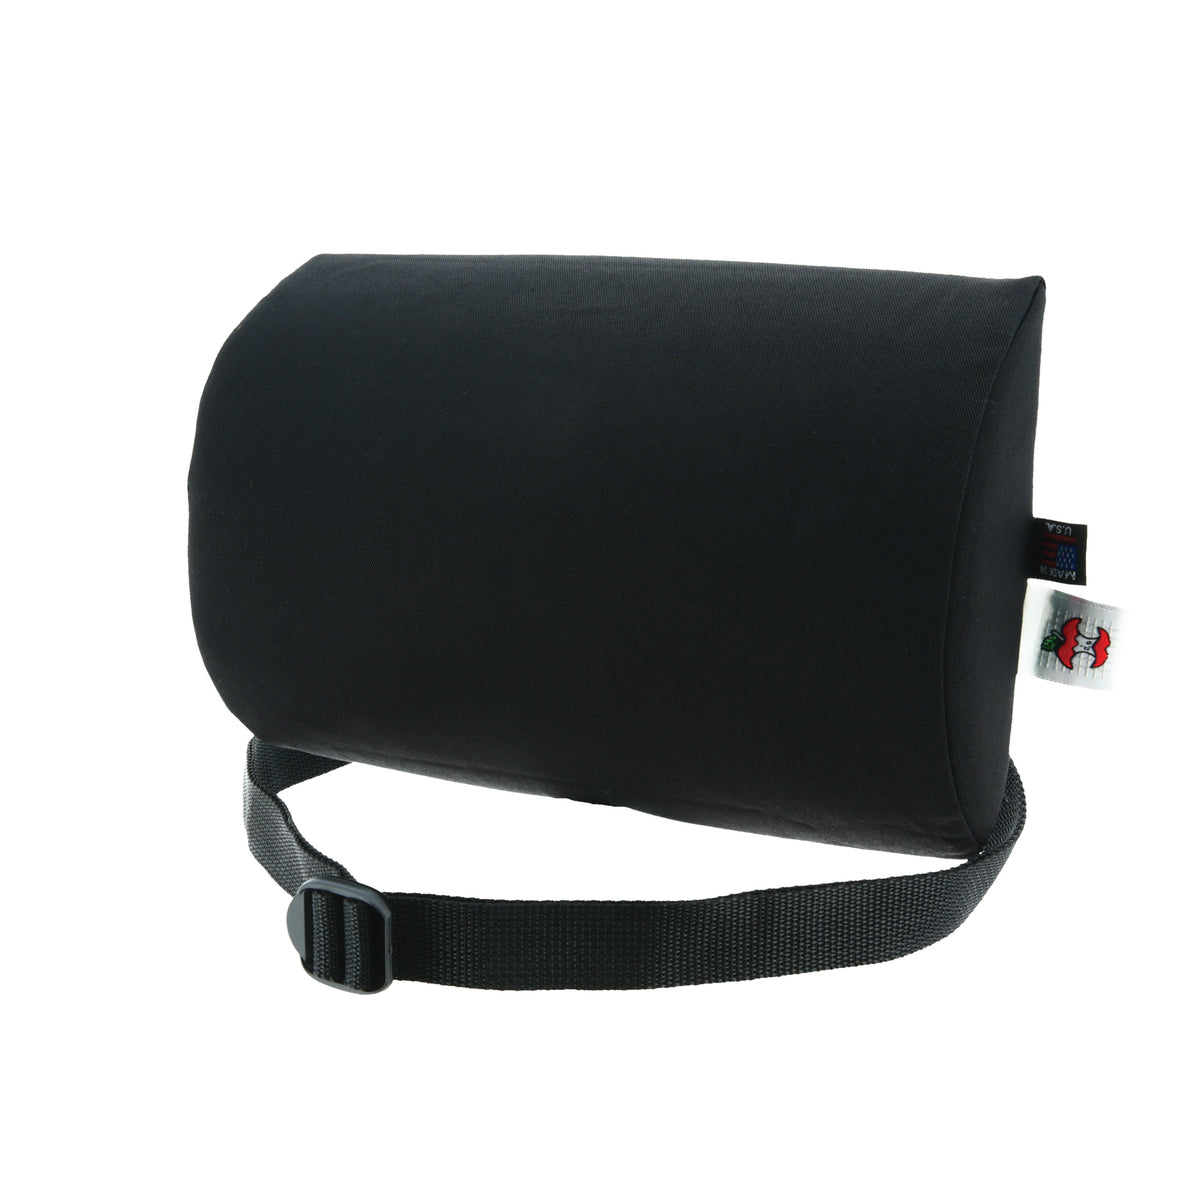 Luniform Lumbar Support Cushion 7 12 H x 11 x 2 34 D Black - Office Depot